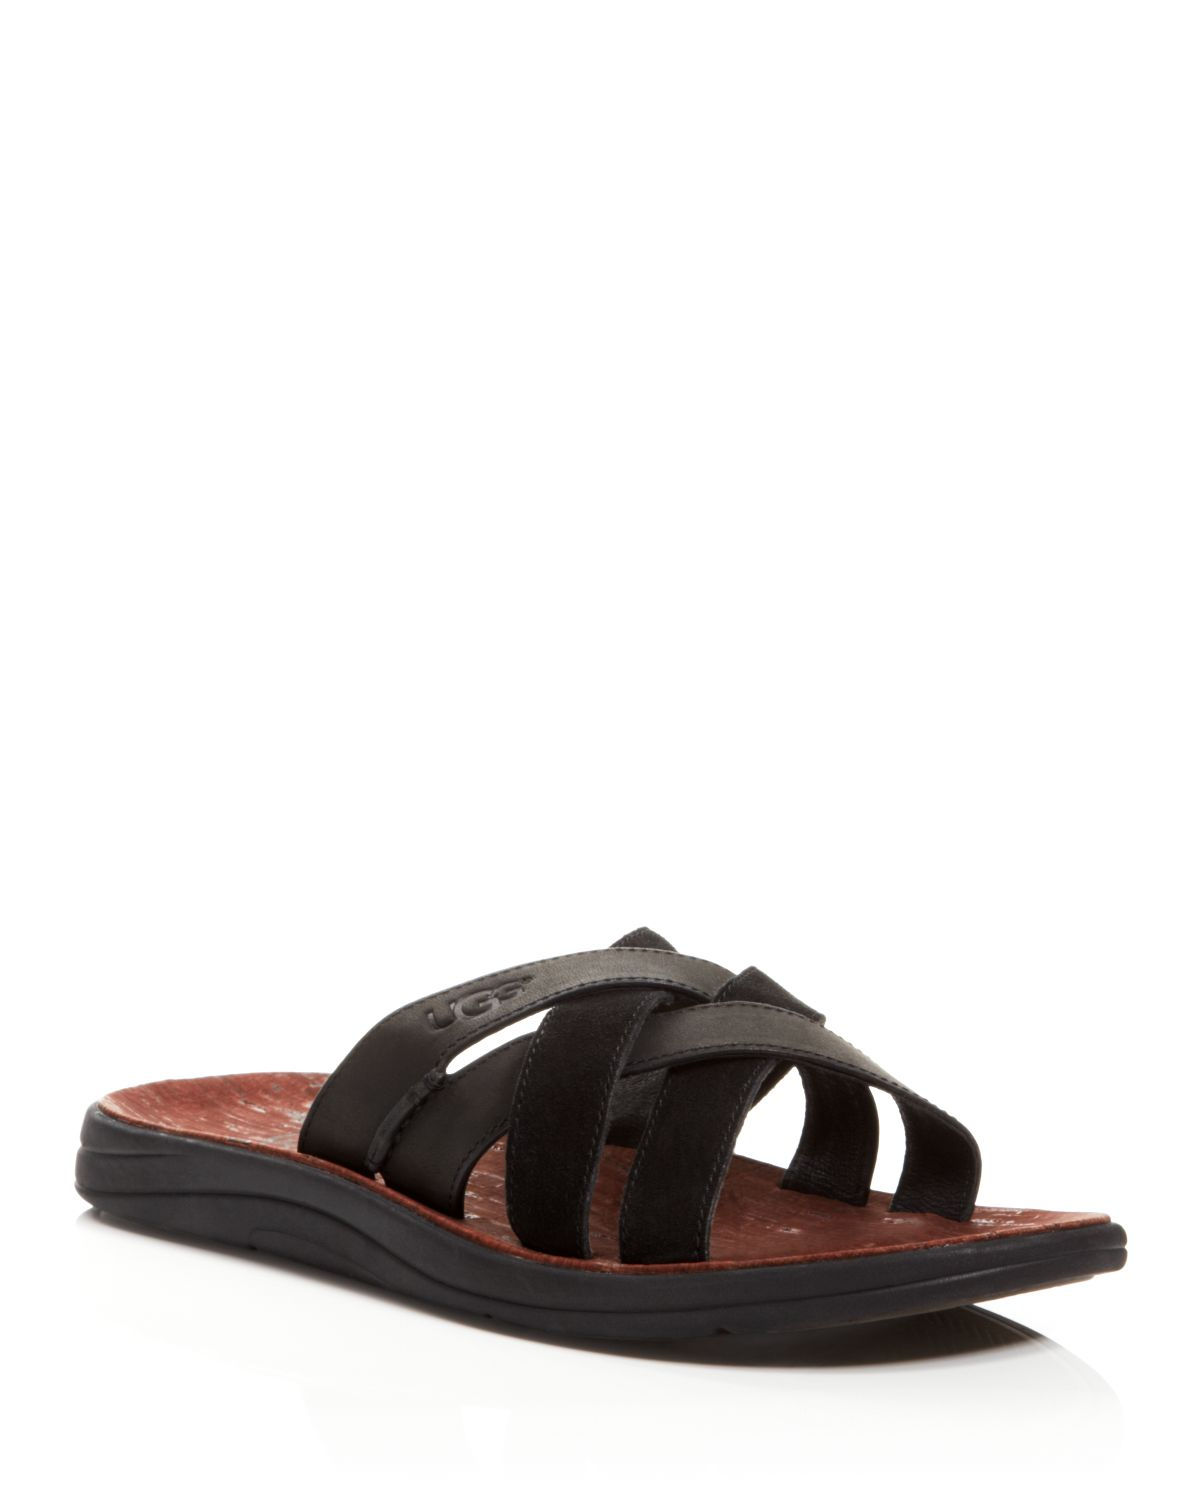 Lyst - Ugg Ugg® Australia Delroy Leather Slide Sandals in Black for Men